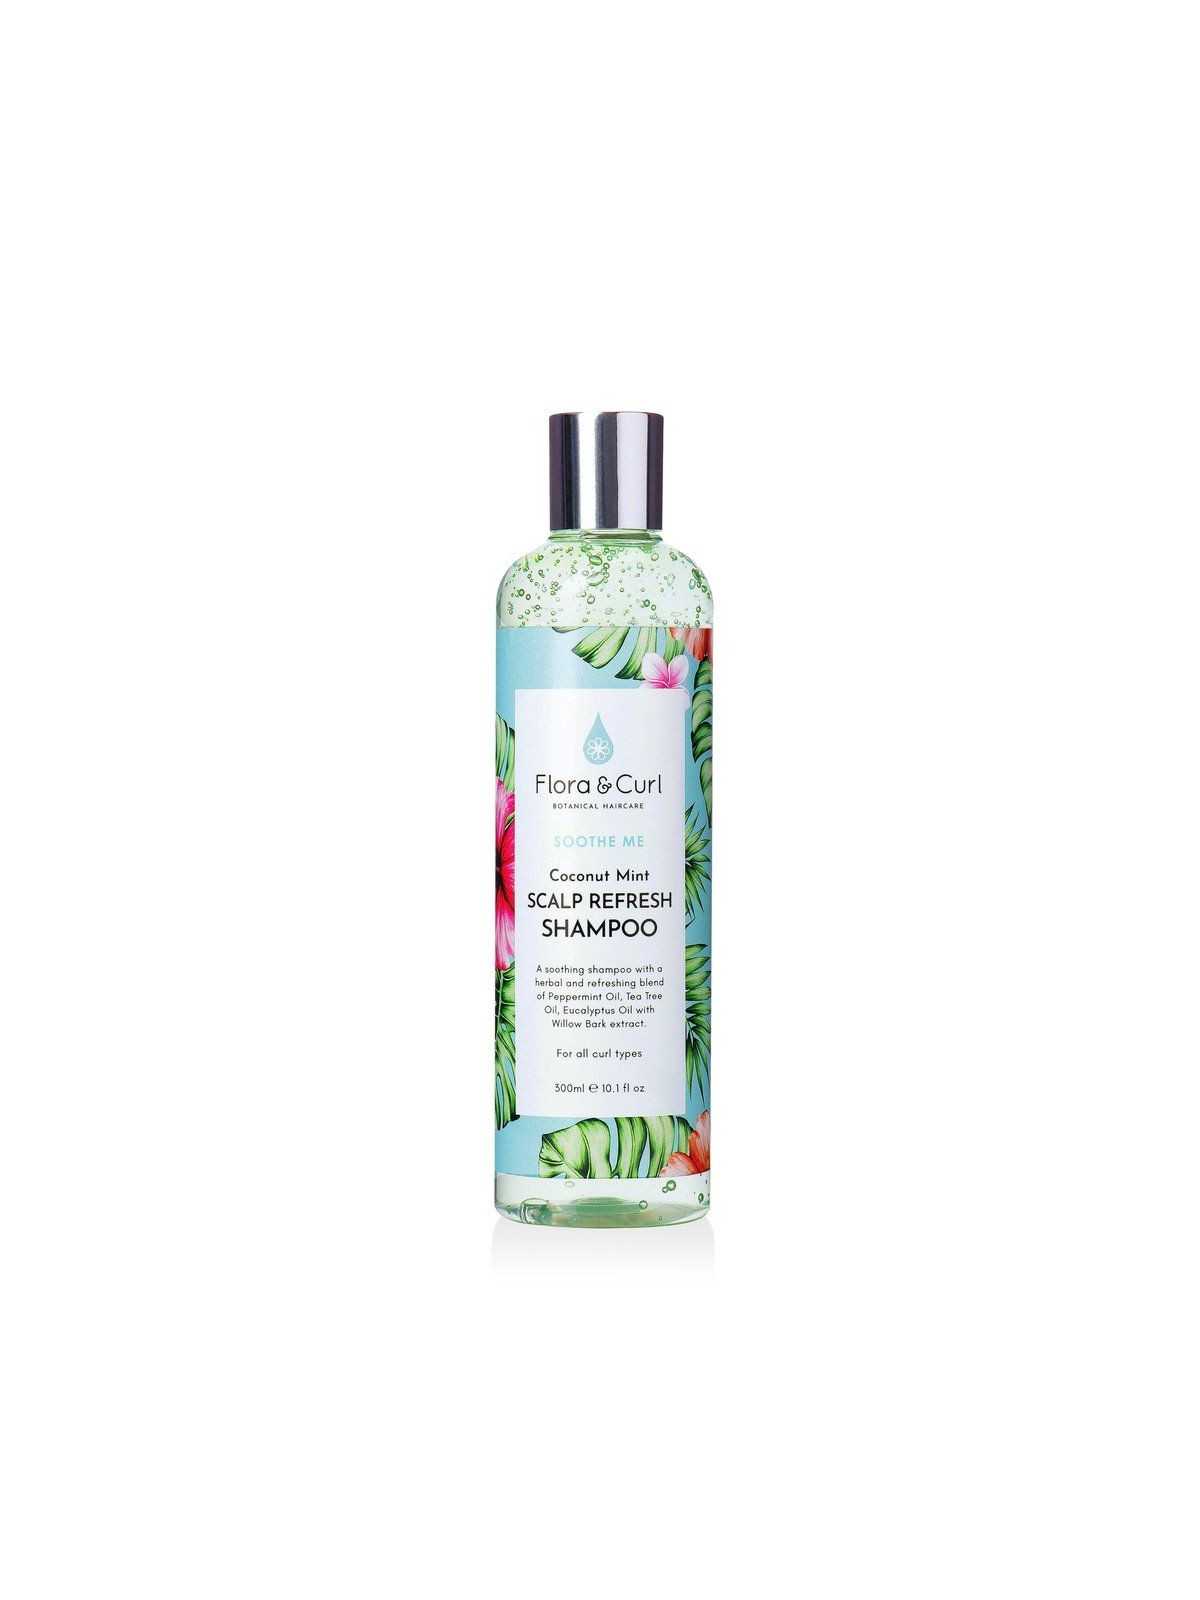 Comprar Flora And Curl Coconut Mint Scalp Refresh Shampoo 300ml en Método CURLY por sólo 20,99 € o un precio específico de 20,99 € en Thalie Care